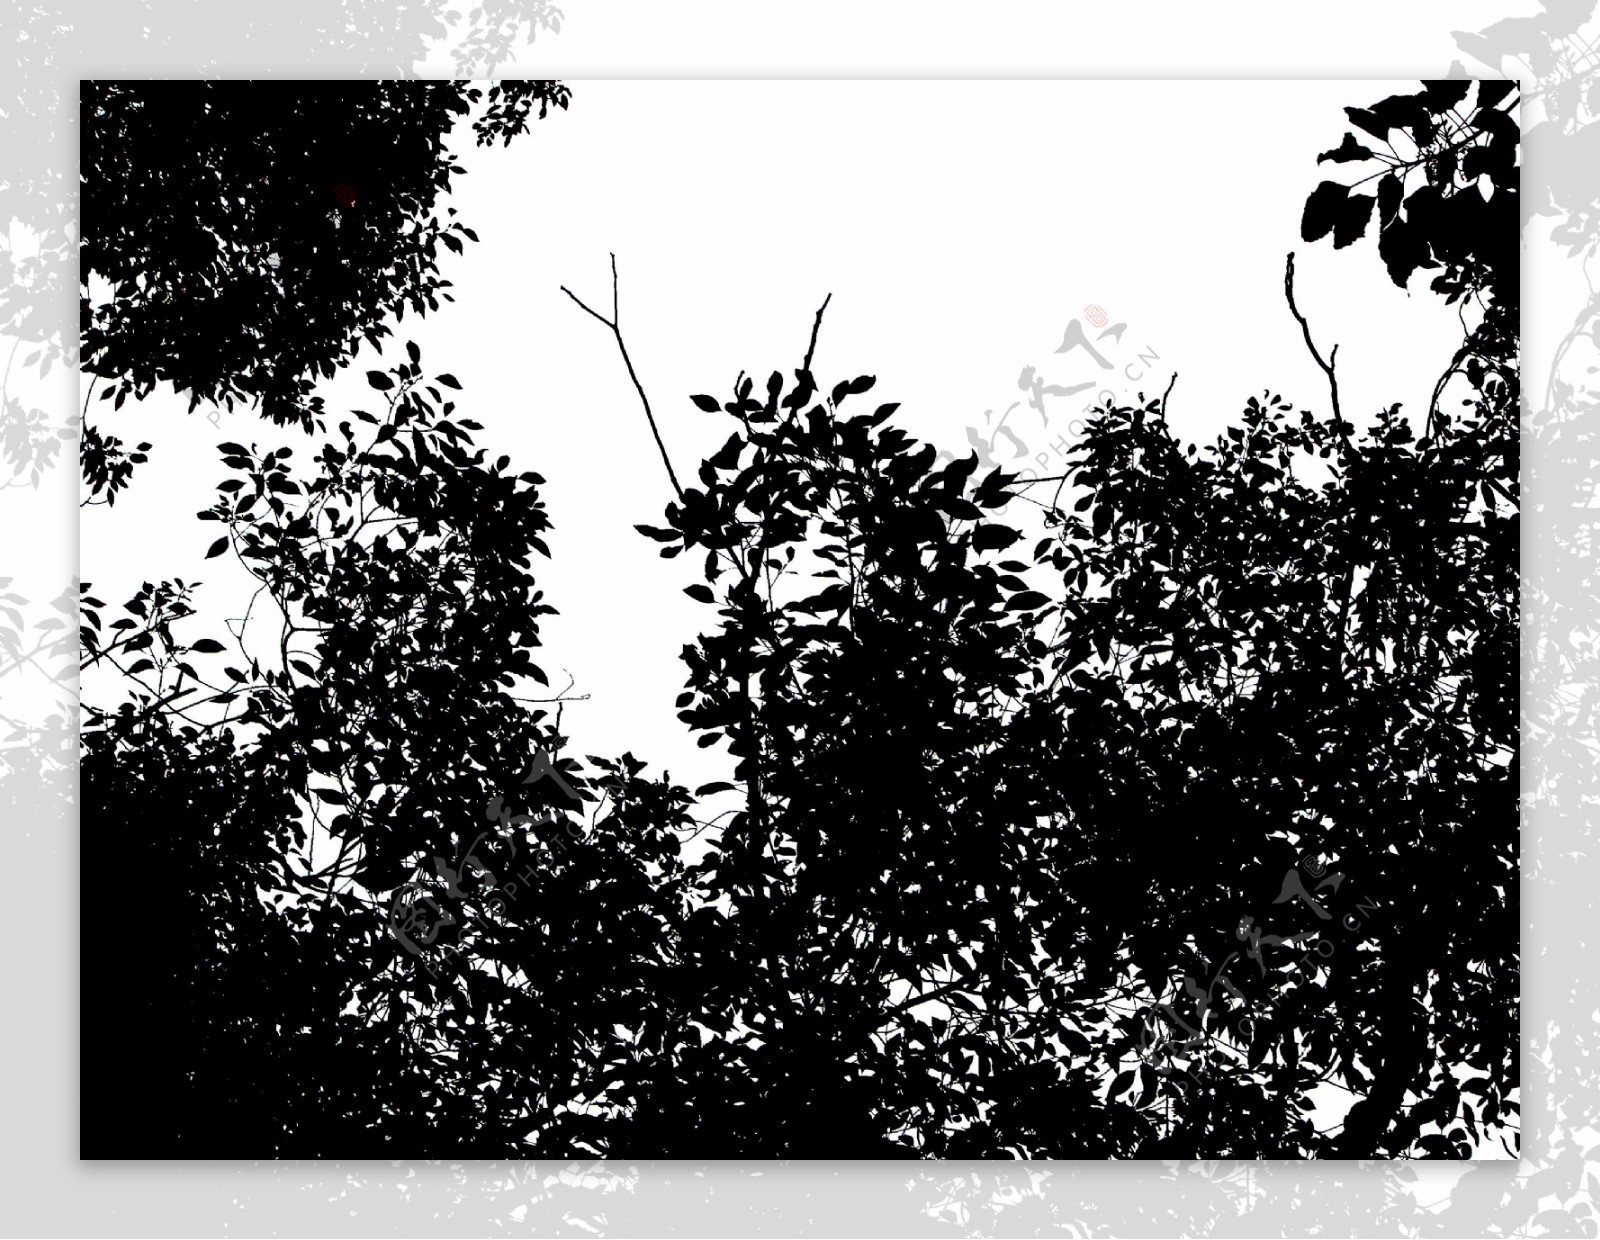 树木剪影4图片